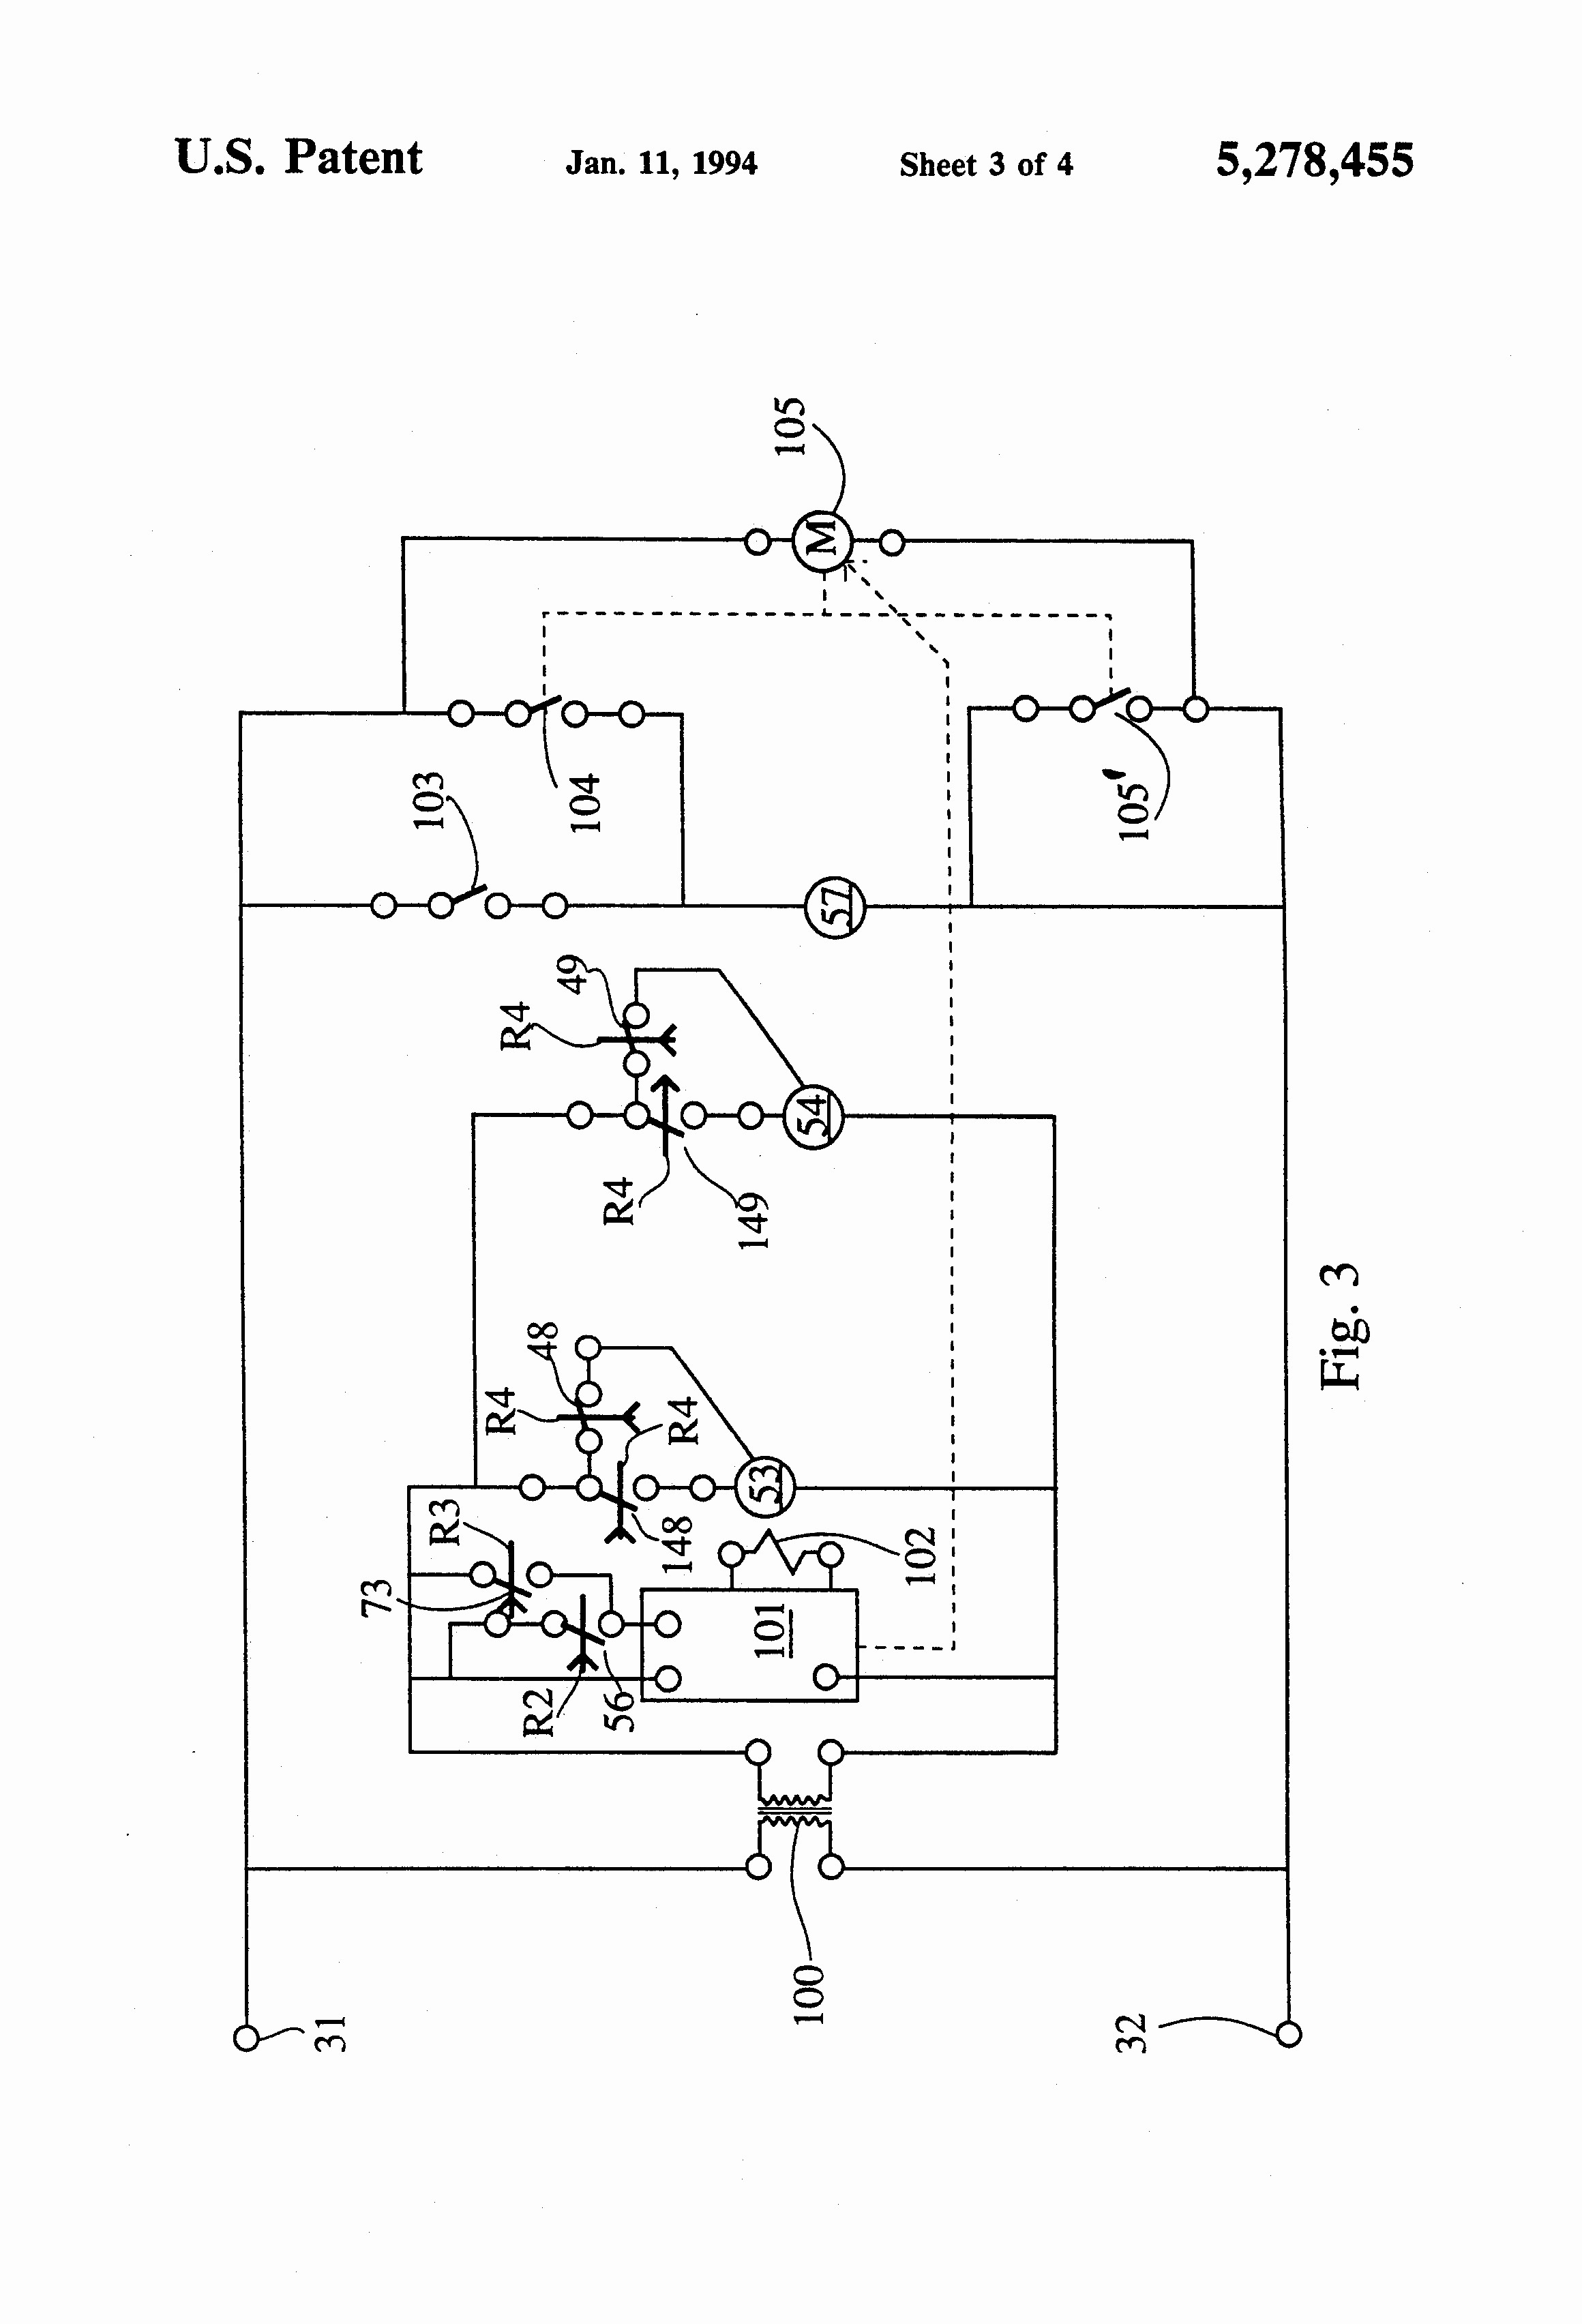 hayward pool pump wiring diagram gallery electrical wiring diagram rh metroroomph